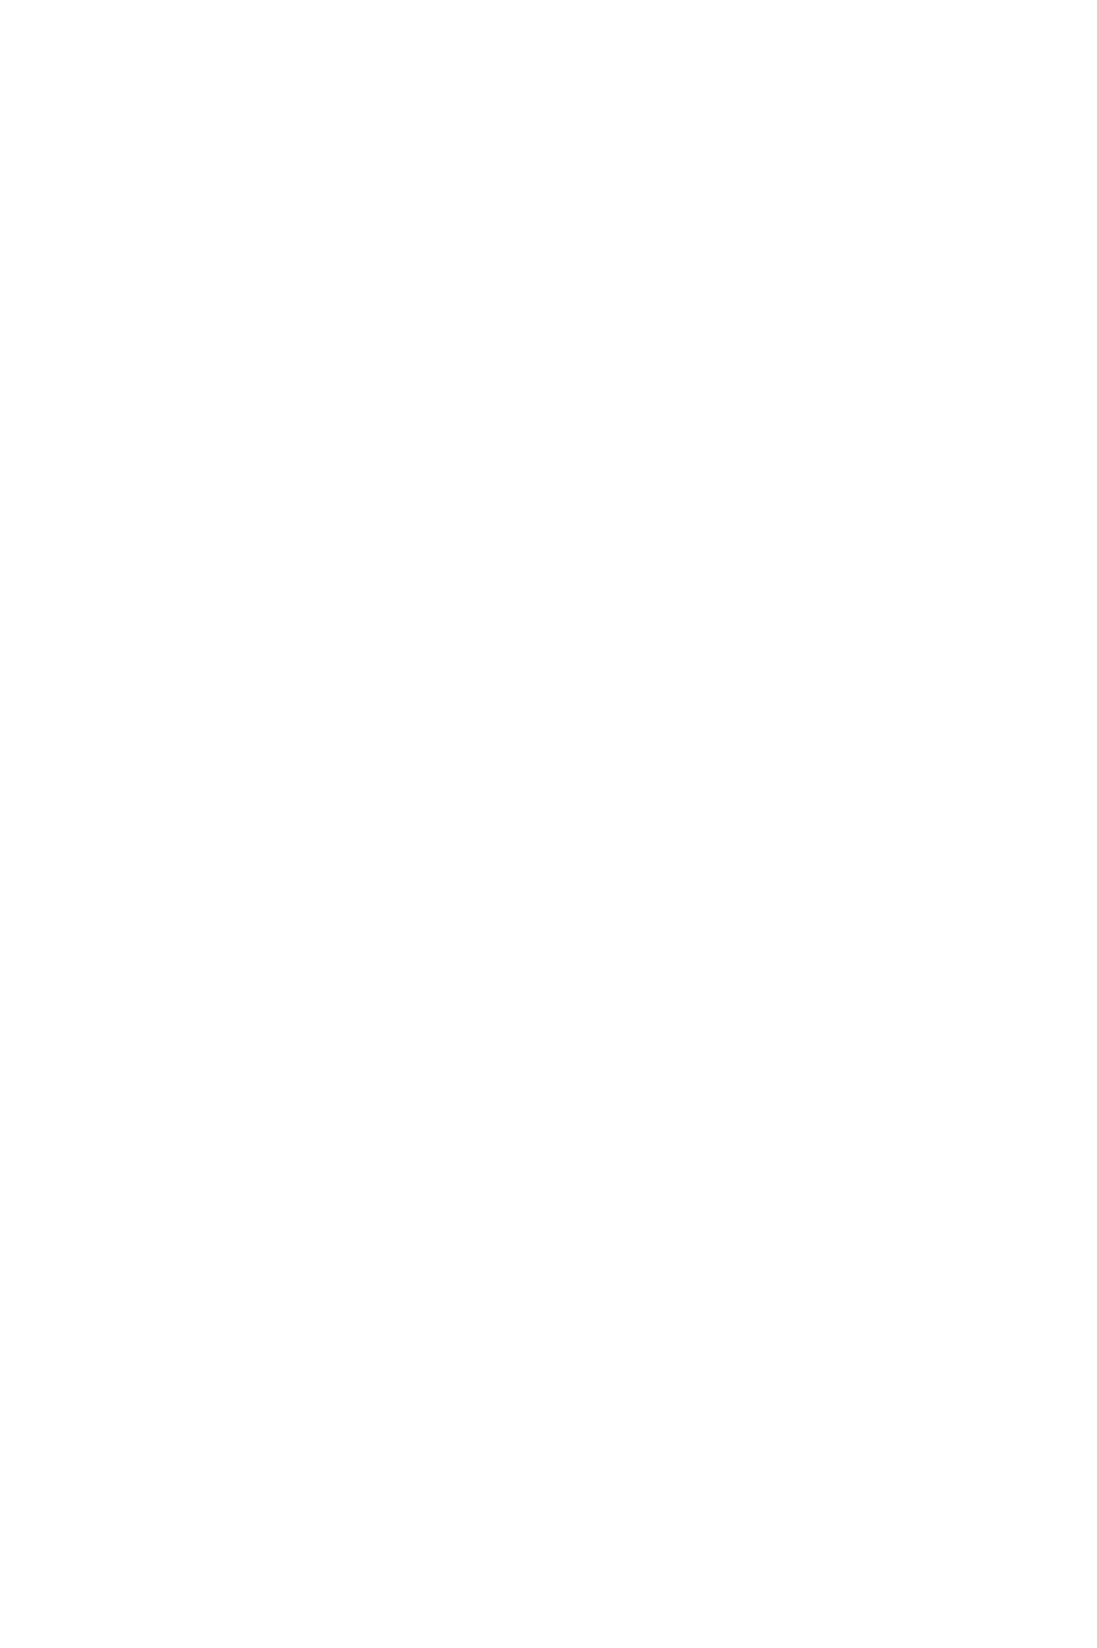 TPG Capital logo pour fonds sombres (PNG transparent)